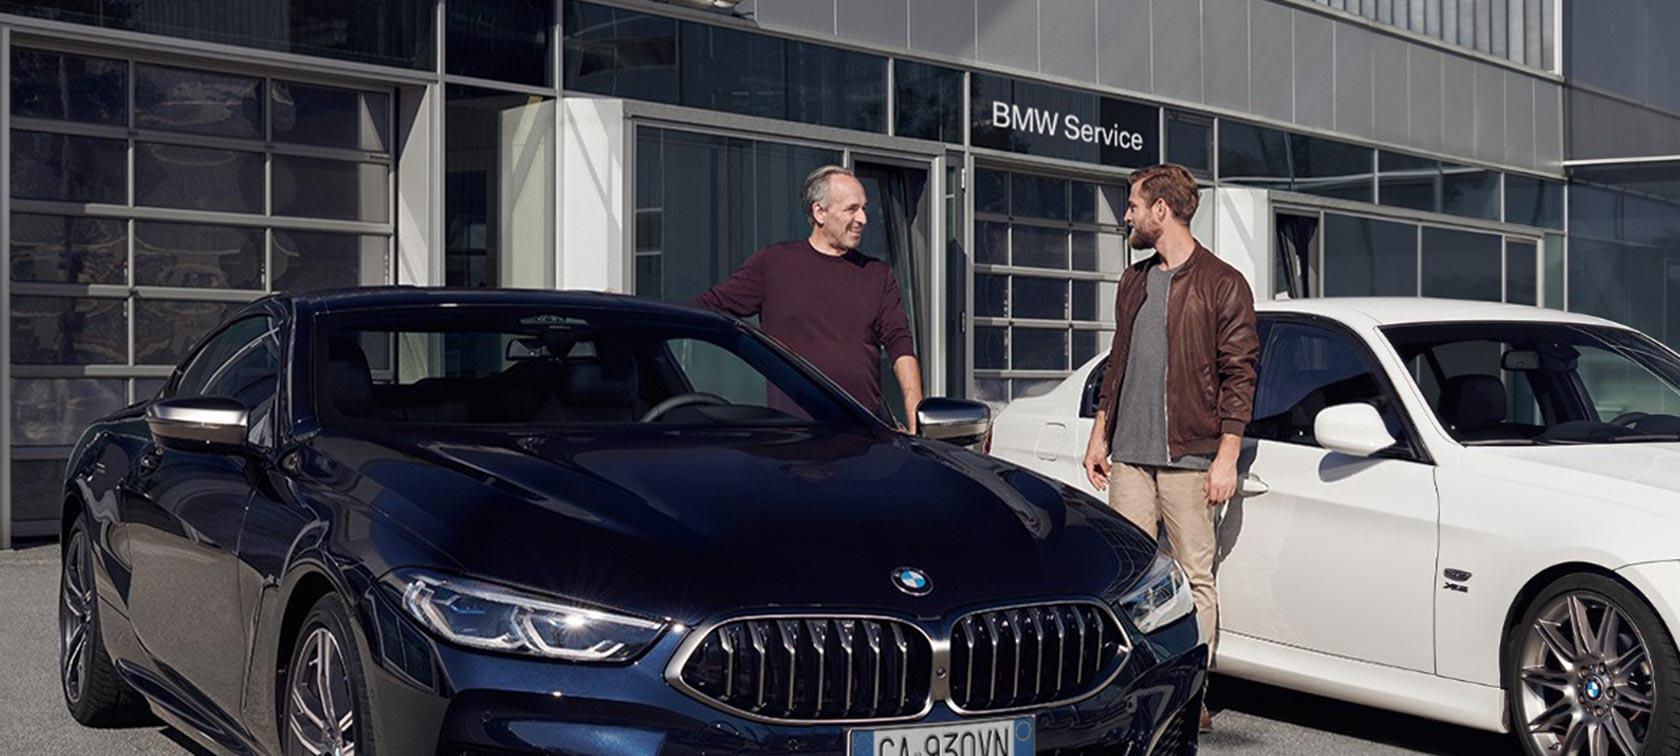 BMW aftersales service update